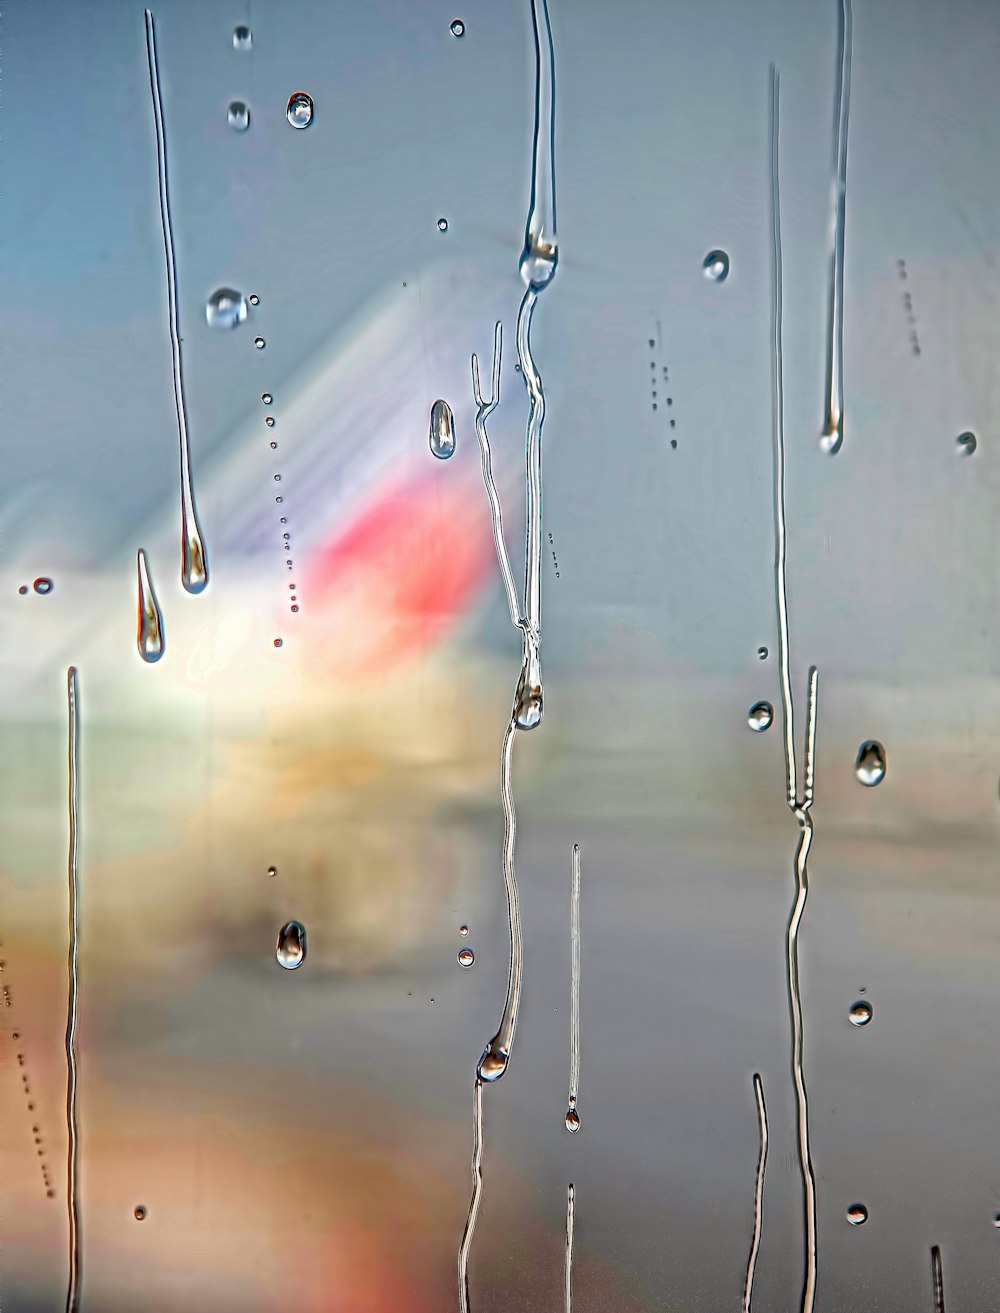 Fotografía de enfoque de gotas de agua sobre la superficie del vidrio